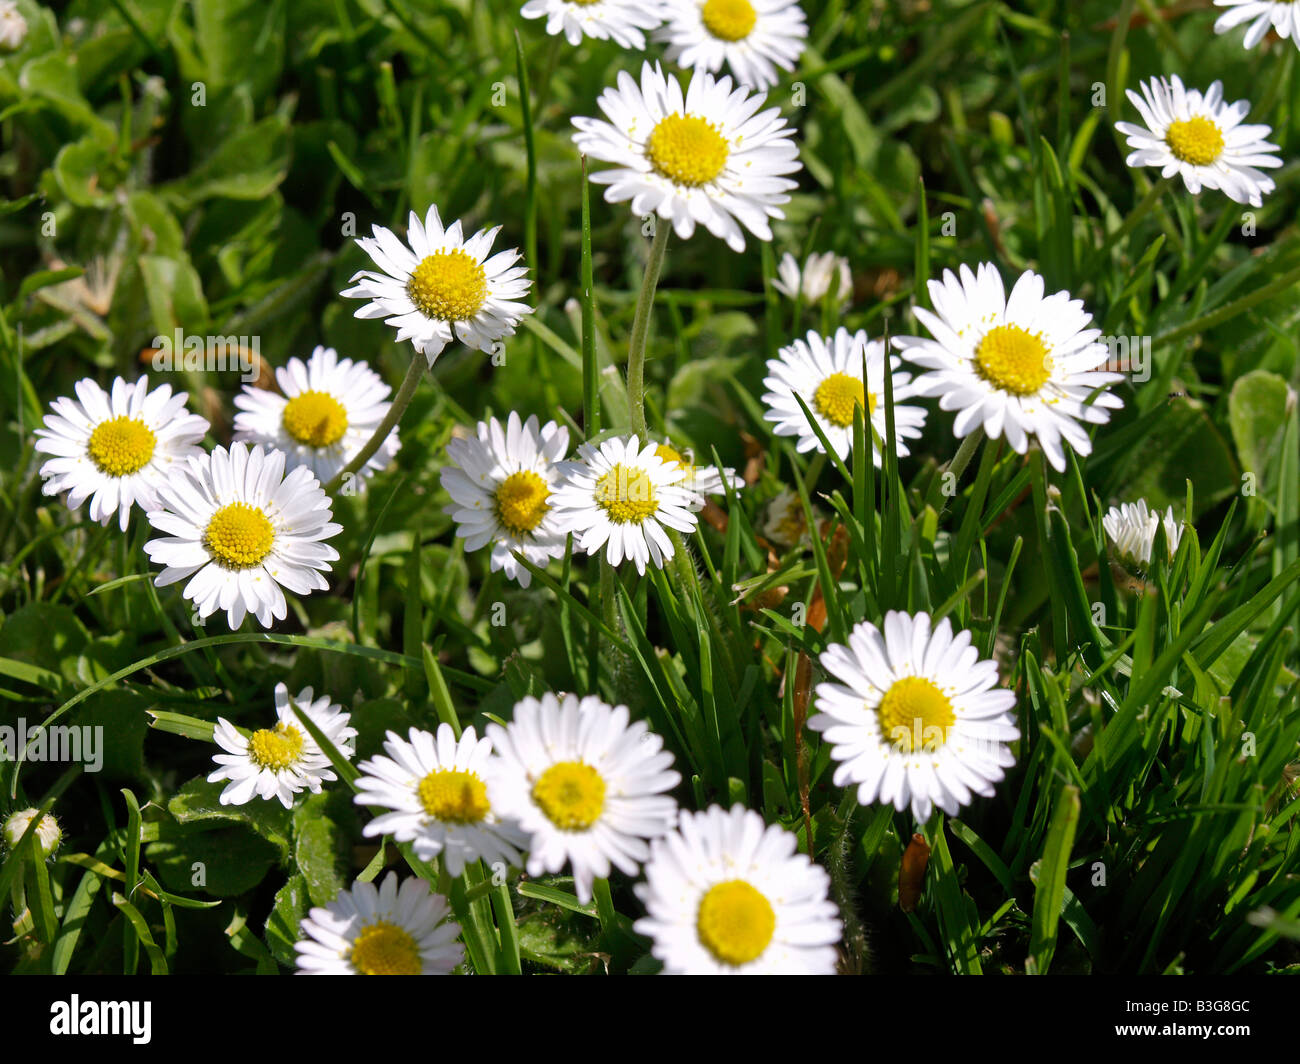 Wiese, Gaensebluemchen, Lawn Daisies (Bellis perennis) Stock Photo